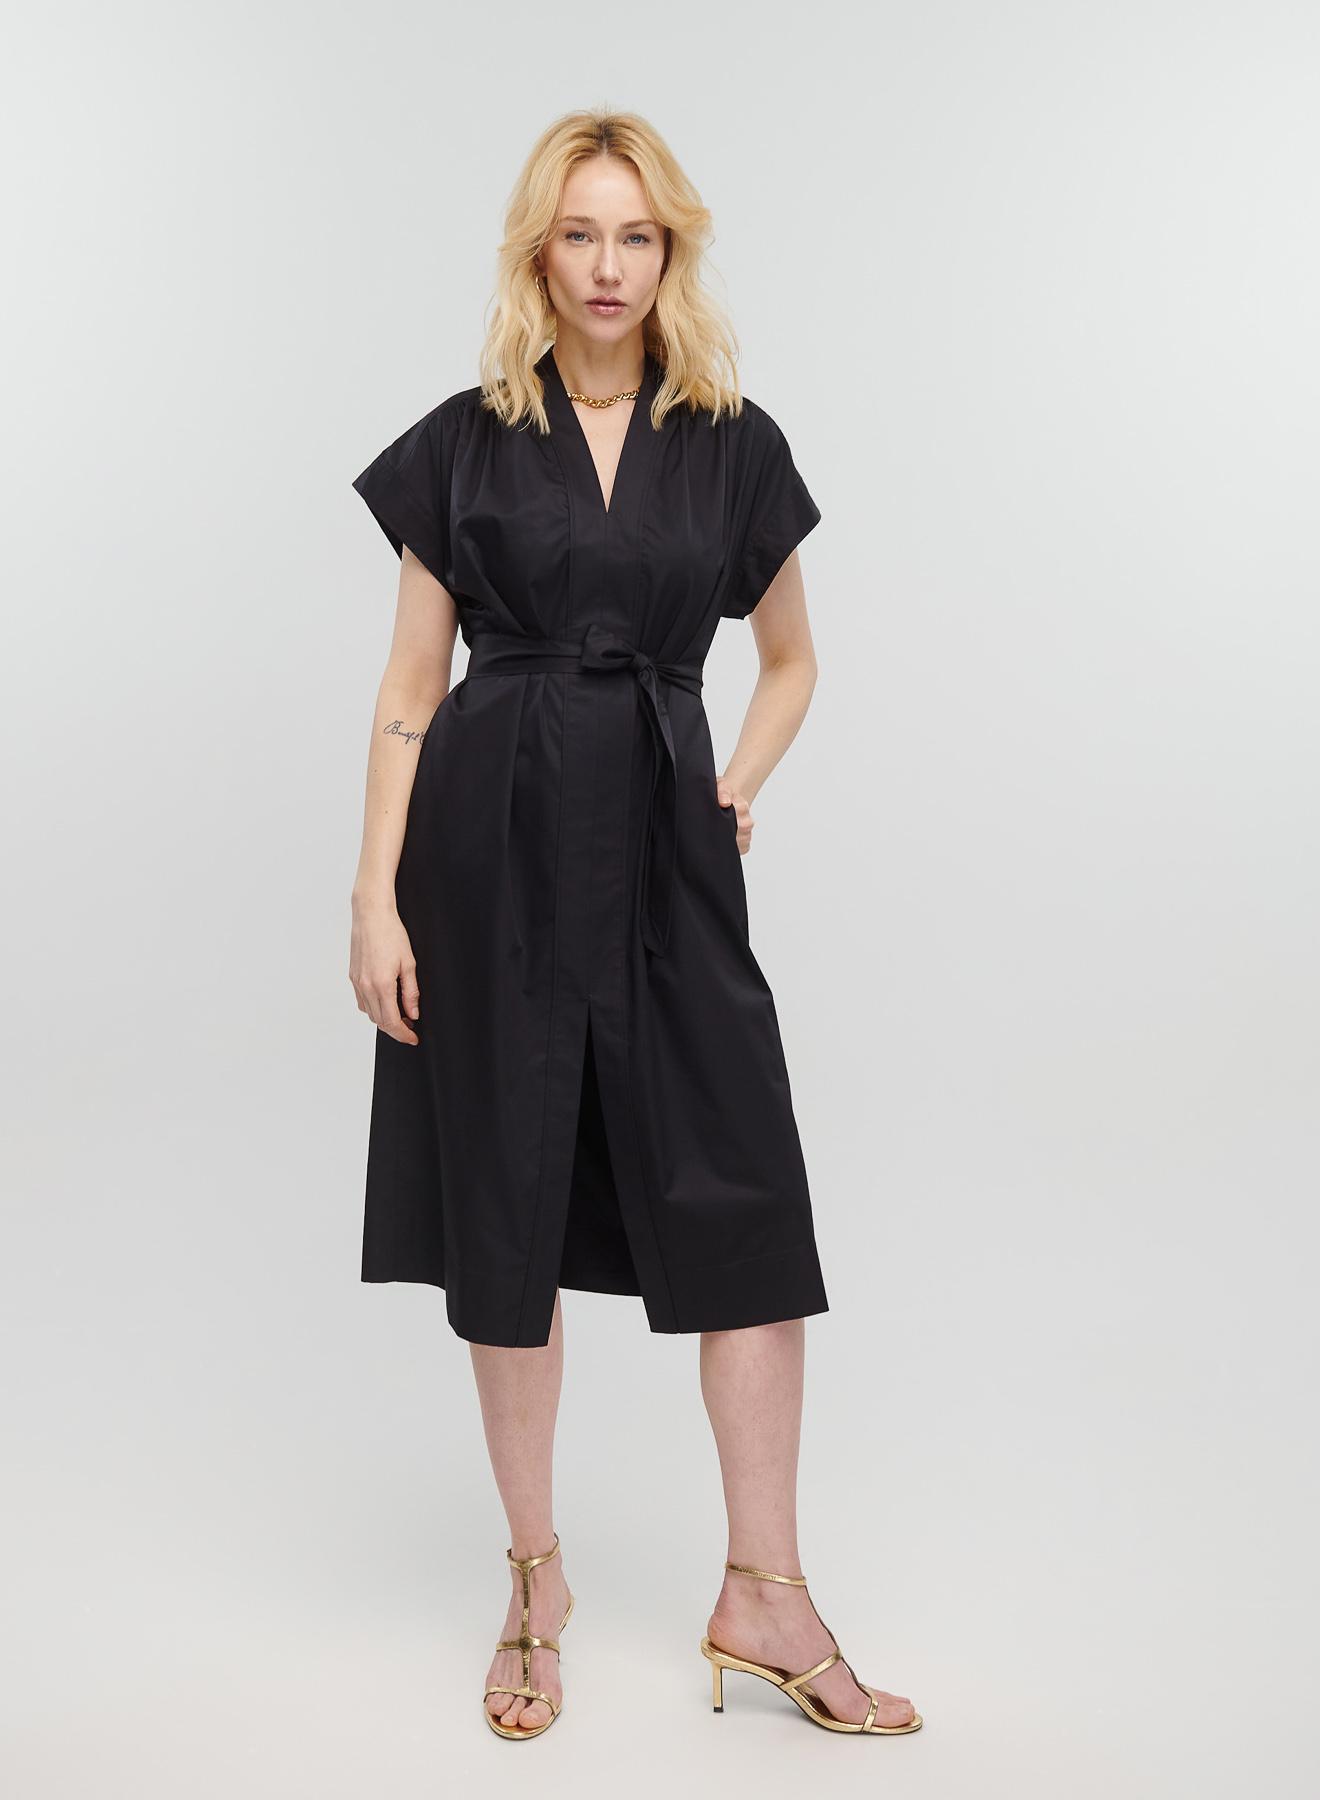 Μαύρο μακρύ Φόρεμα αμάνικο με V λαιμόκοψη, ζώνη και σχισμή μπροστά Milla - 1